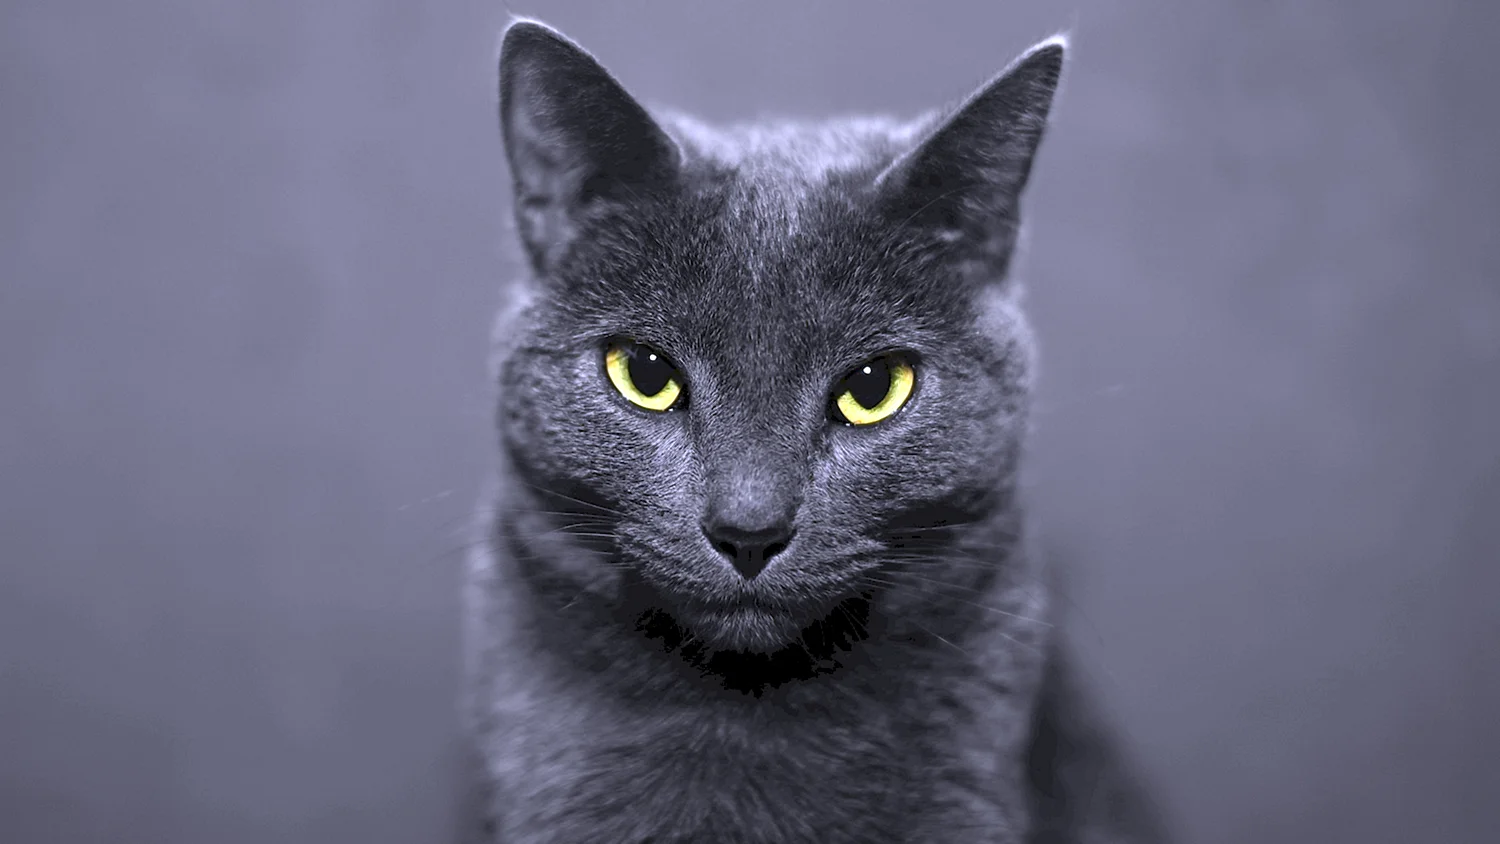 Русская голубая кот